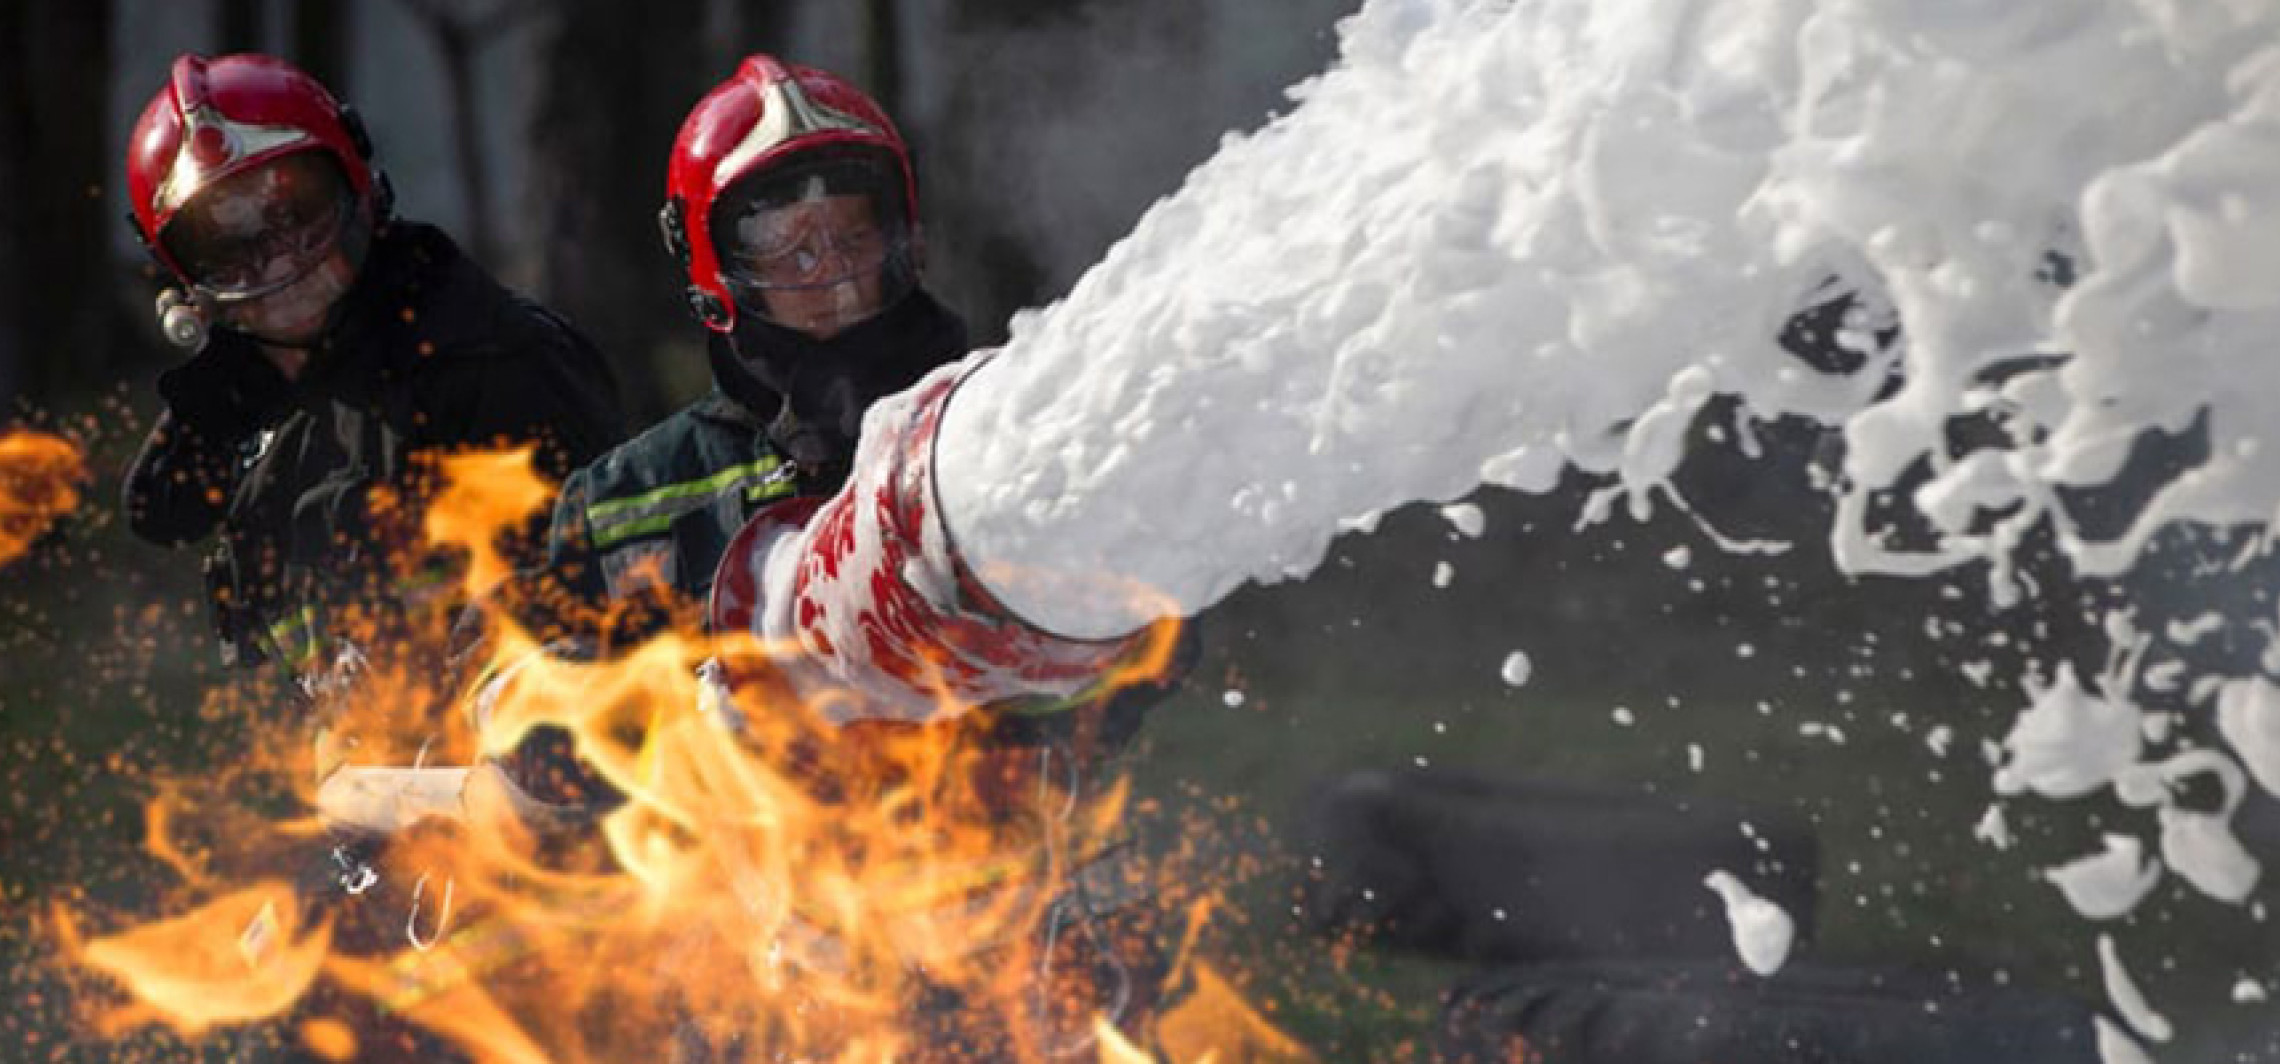 Region - Jakich środków do gaszenia używają strażacy?